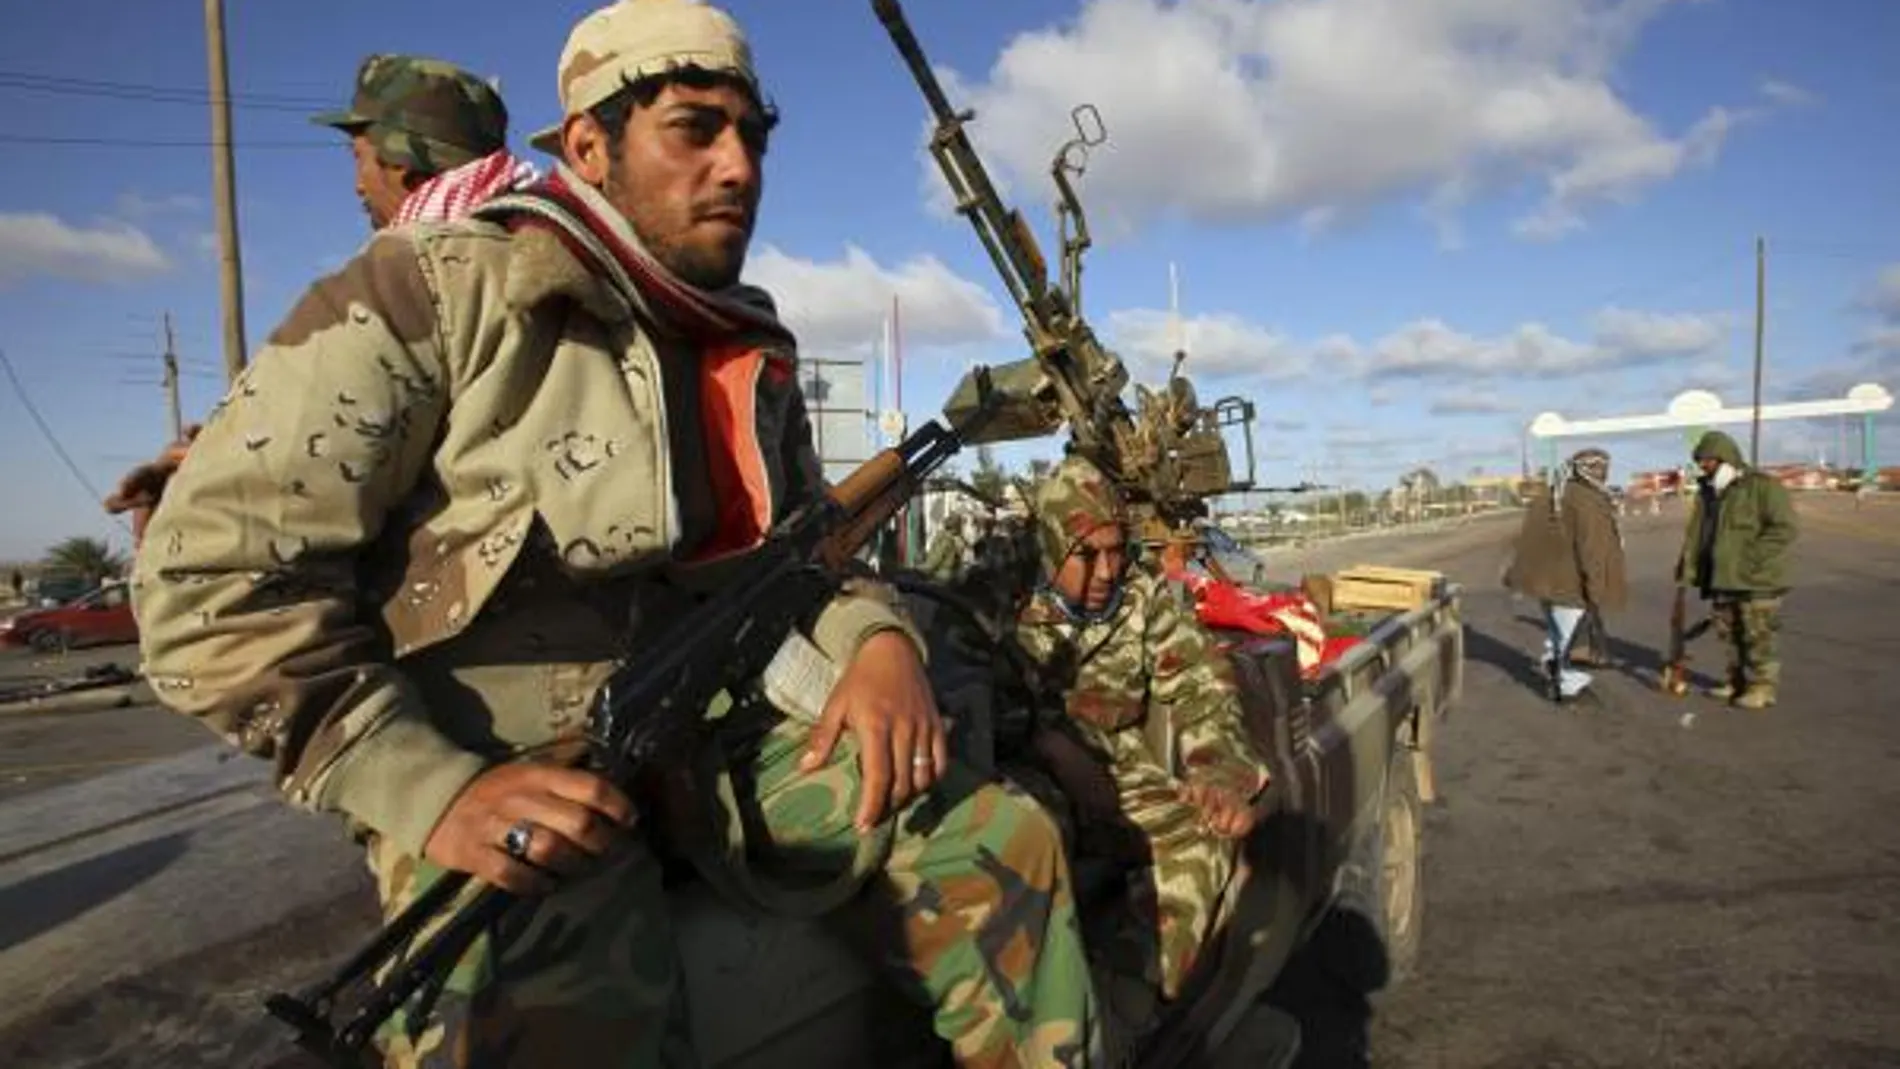 Miembros armados de las fuerzas rebeldes toman posiciones junto a una batería antiaérea cerca de Ras Lanuf, Libia